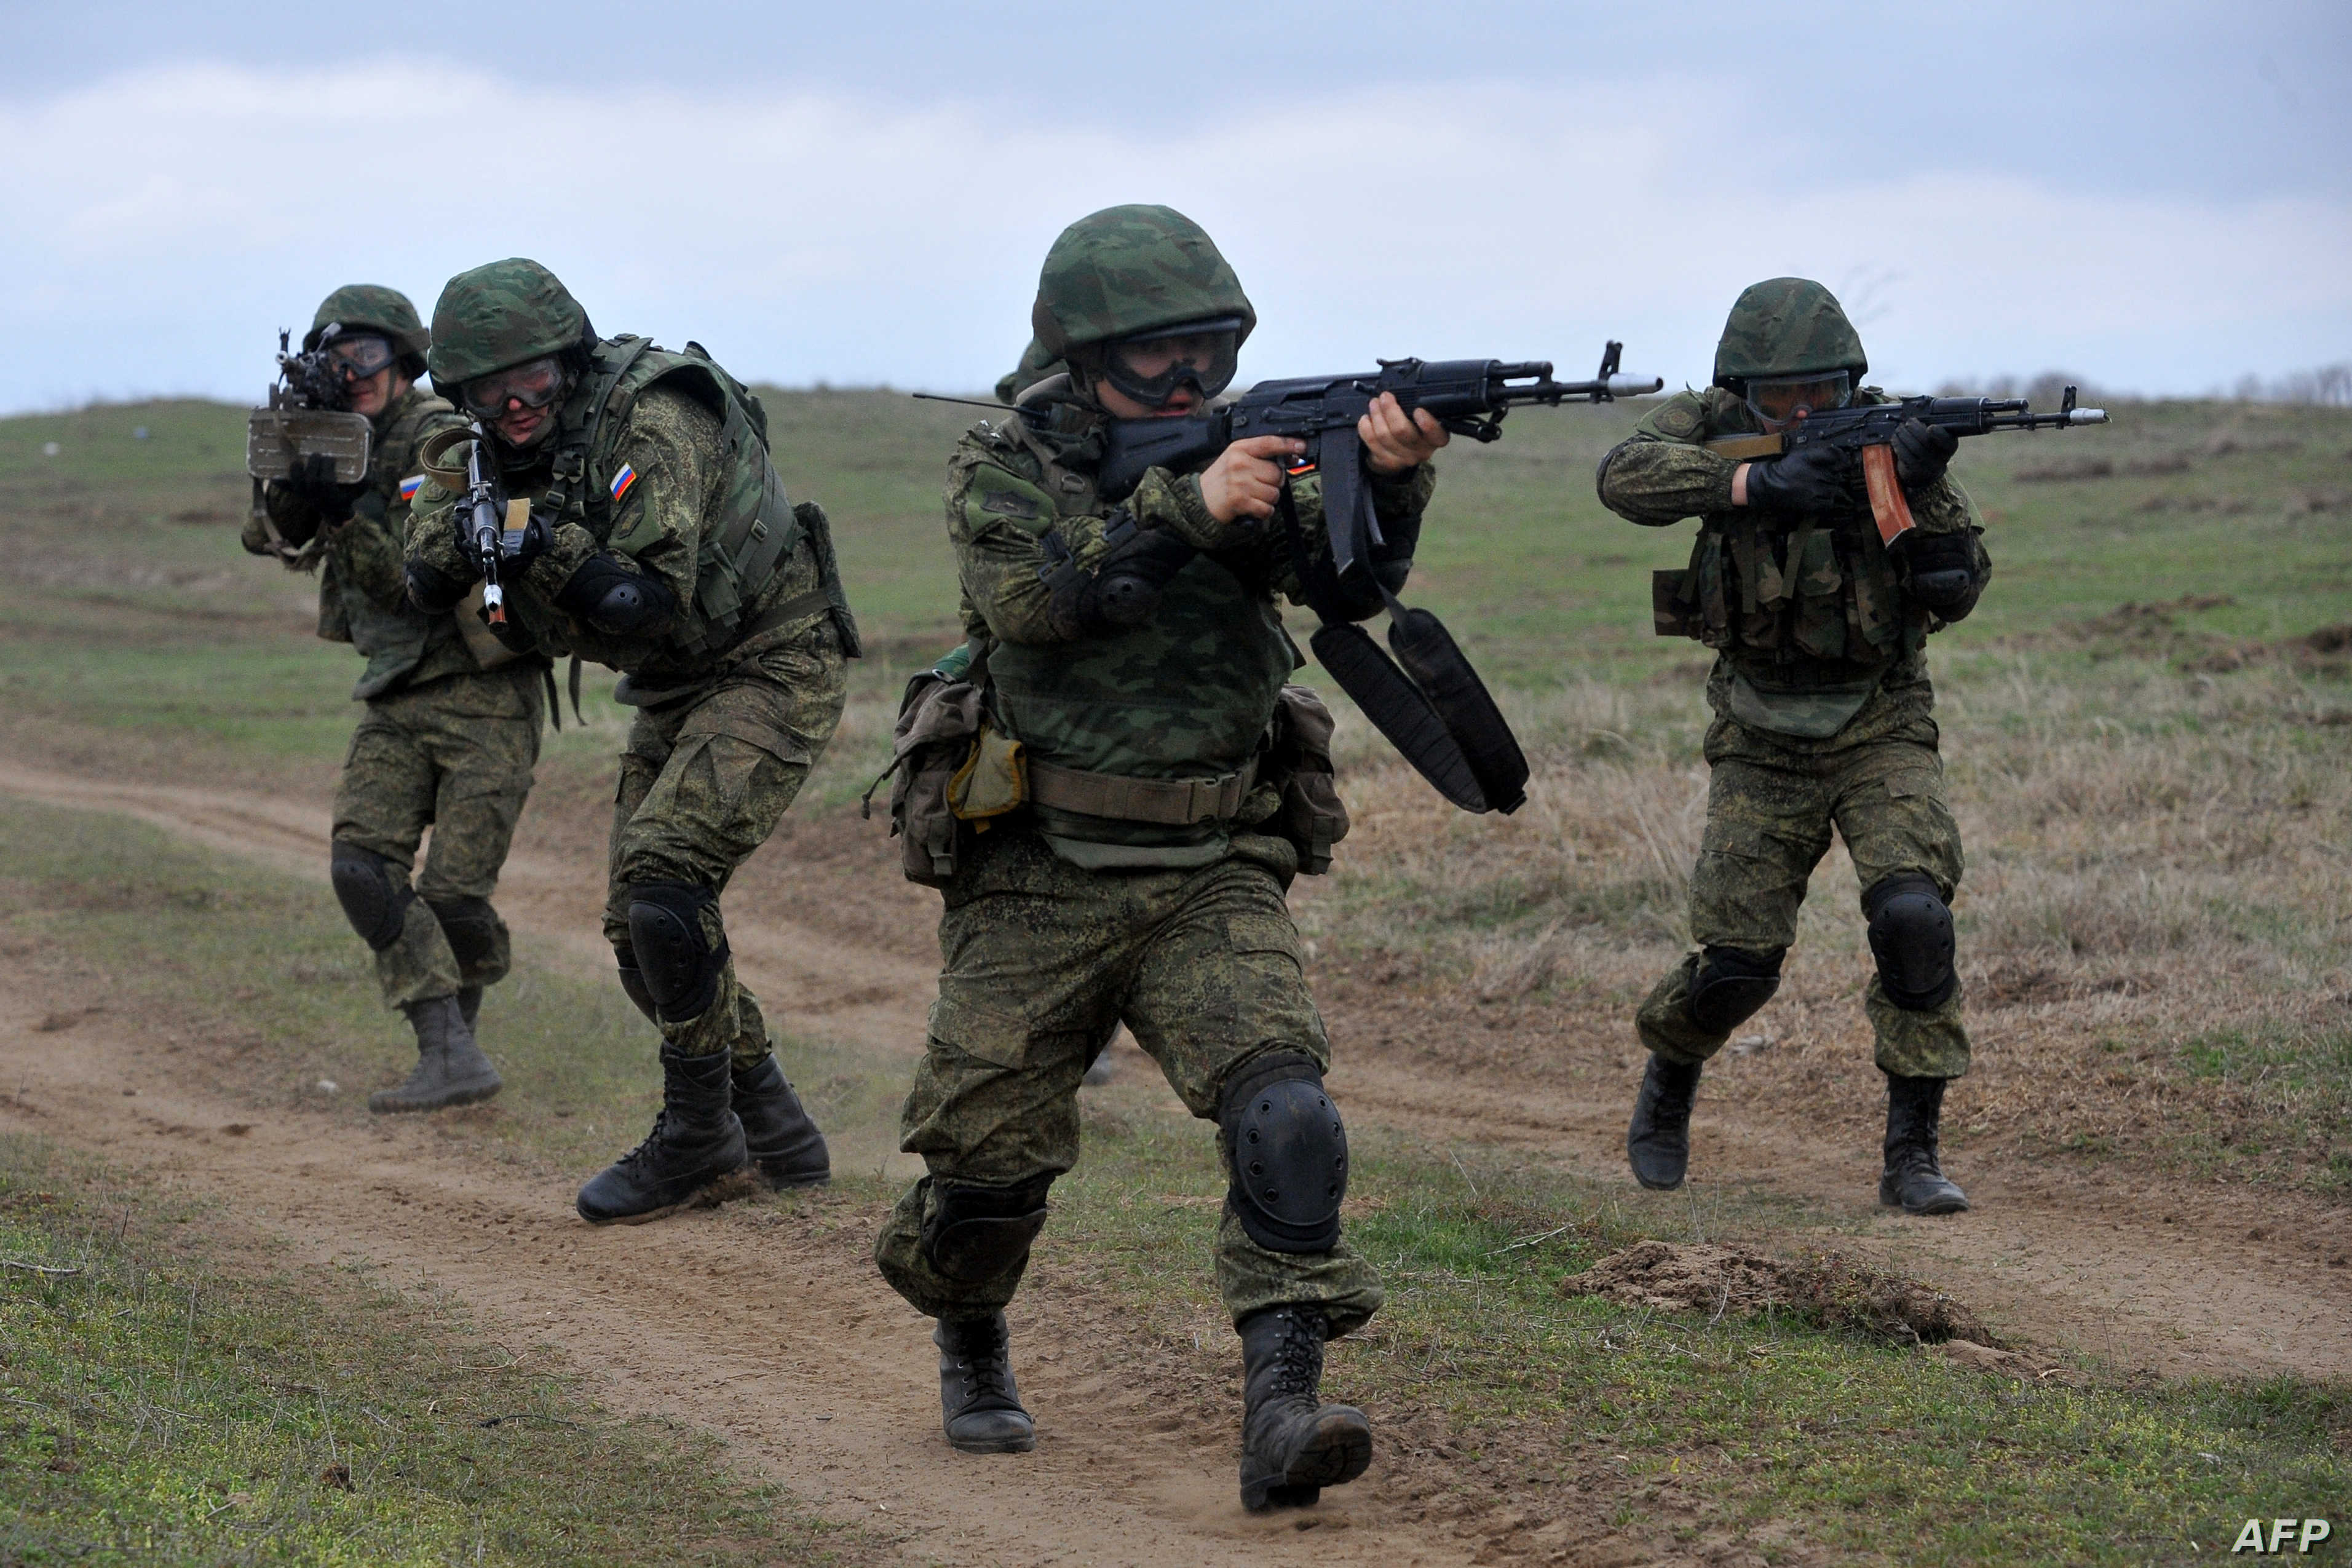 Chercheurs américains: la guerre en Ukraine écrit un certificat de décès pour l’indépendance stratégique de l’Union européenne